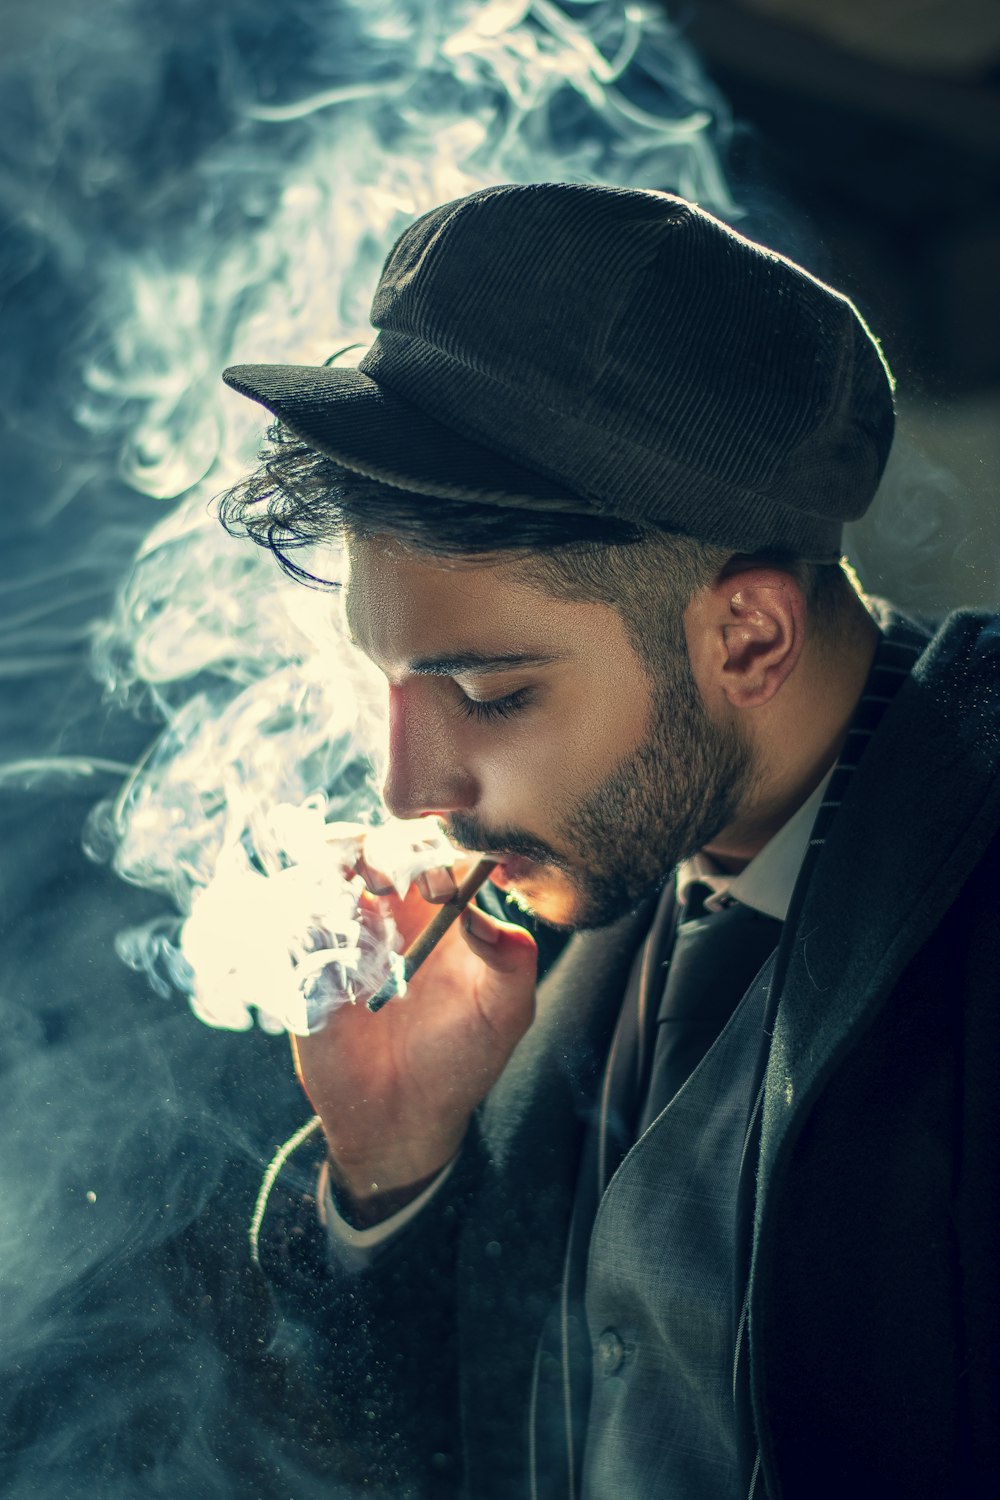 man smoking cigarette wearing black hat